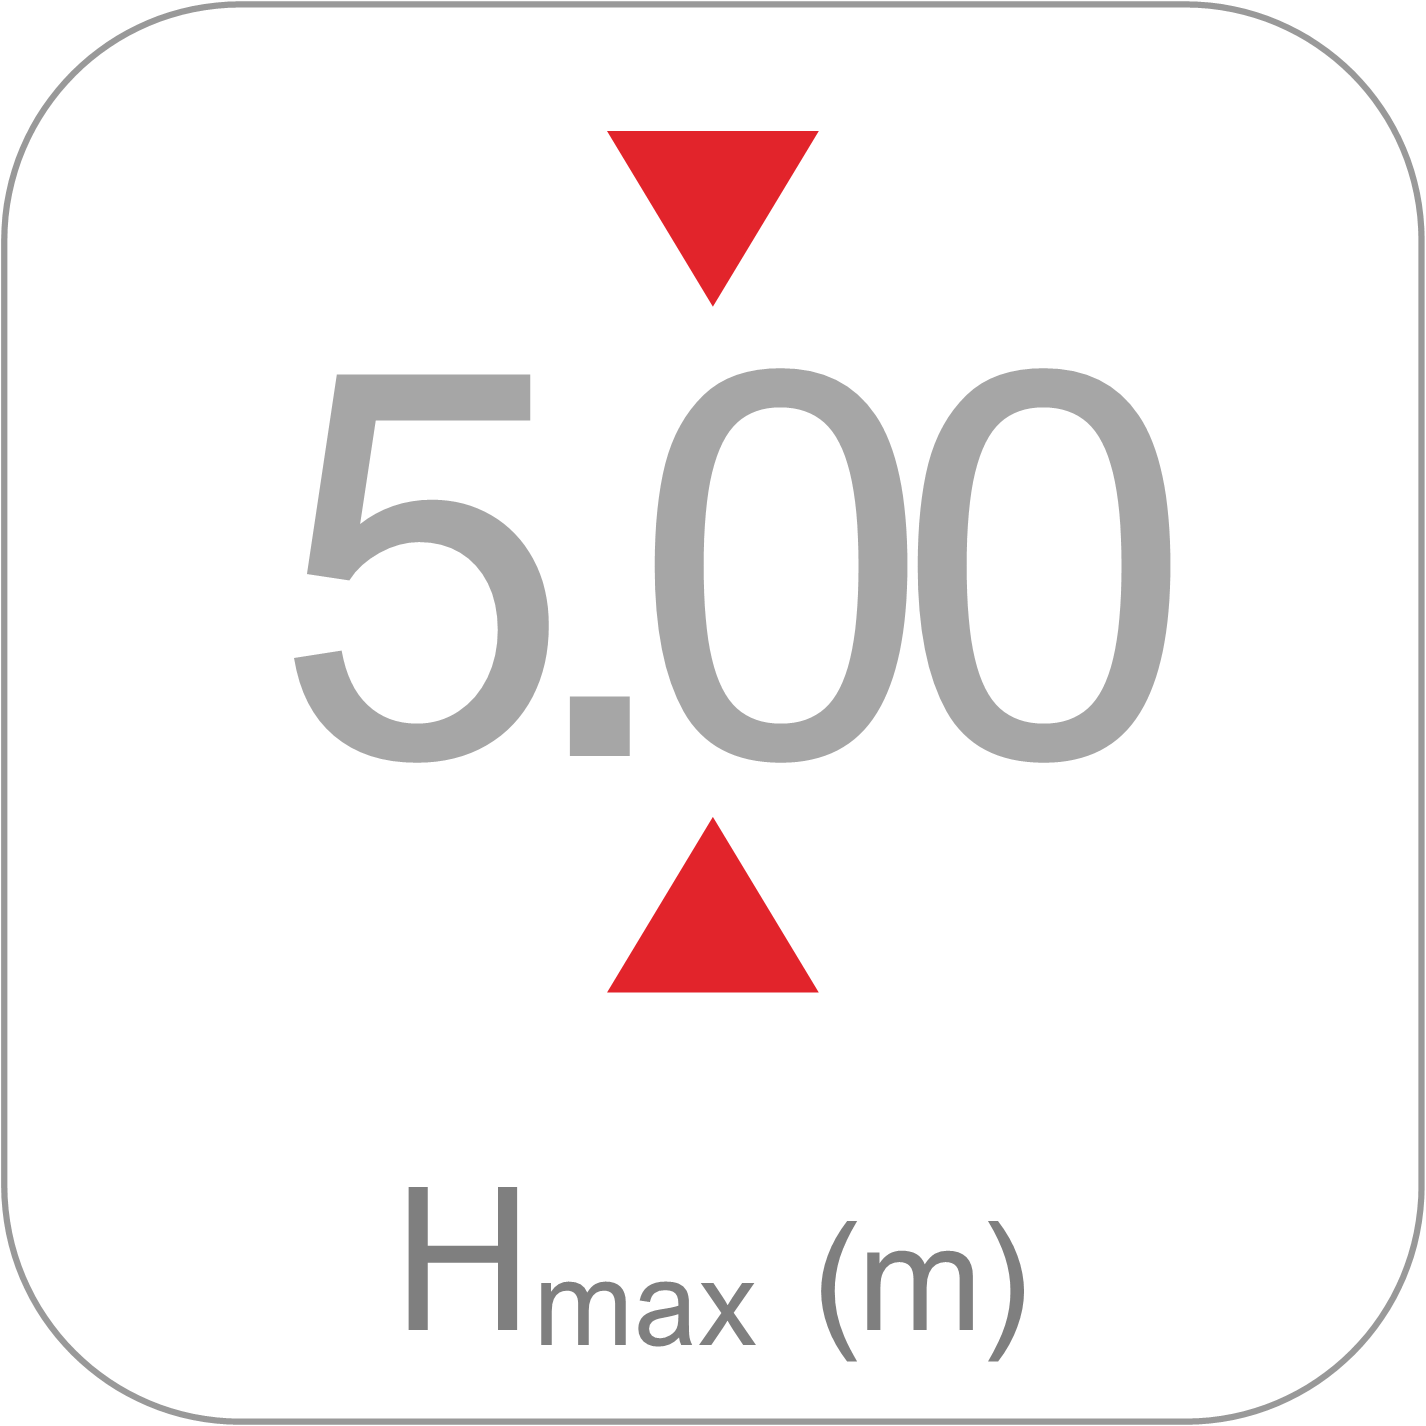 Puntales Serie F - Hmax5m